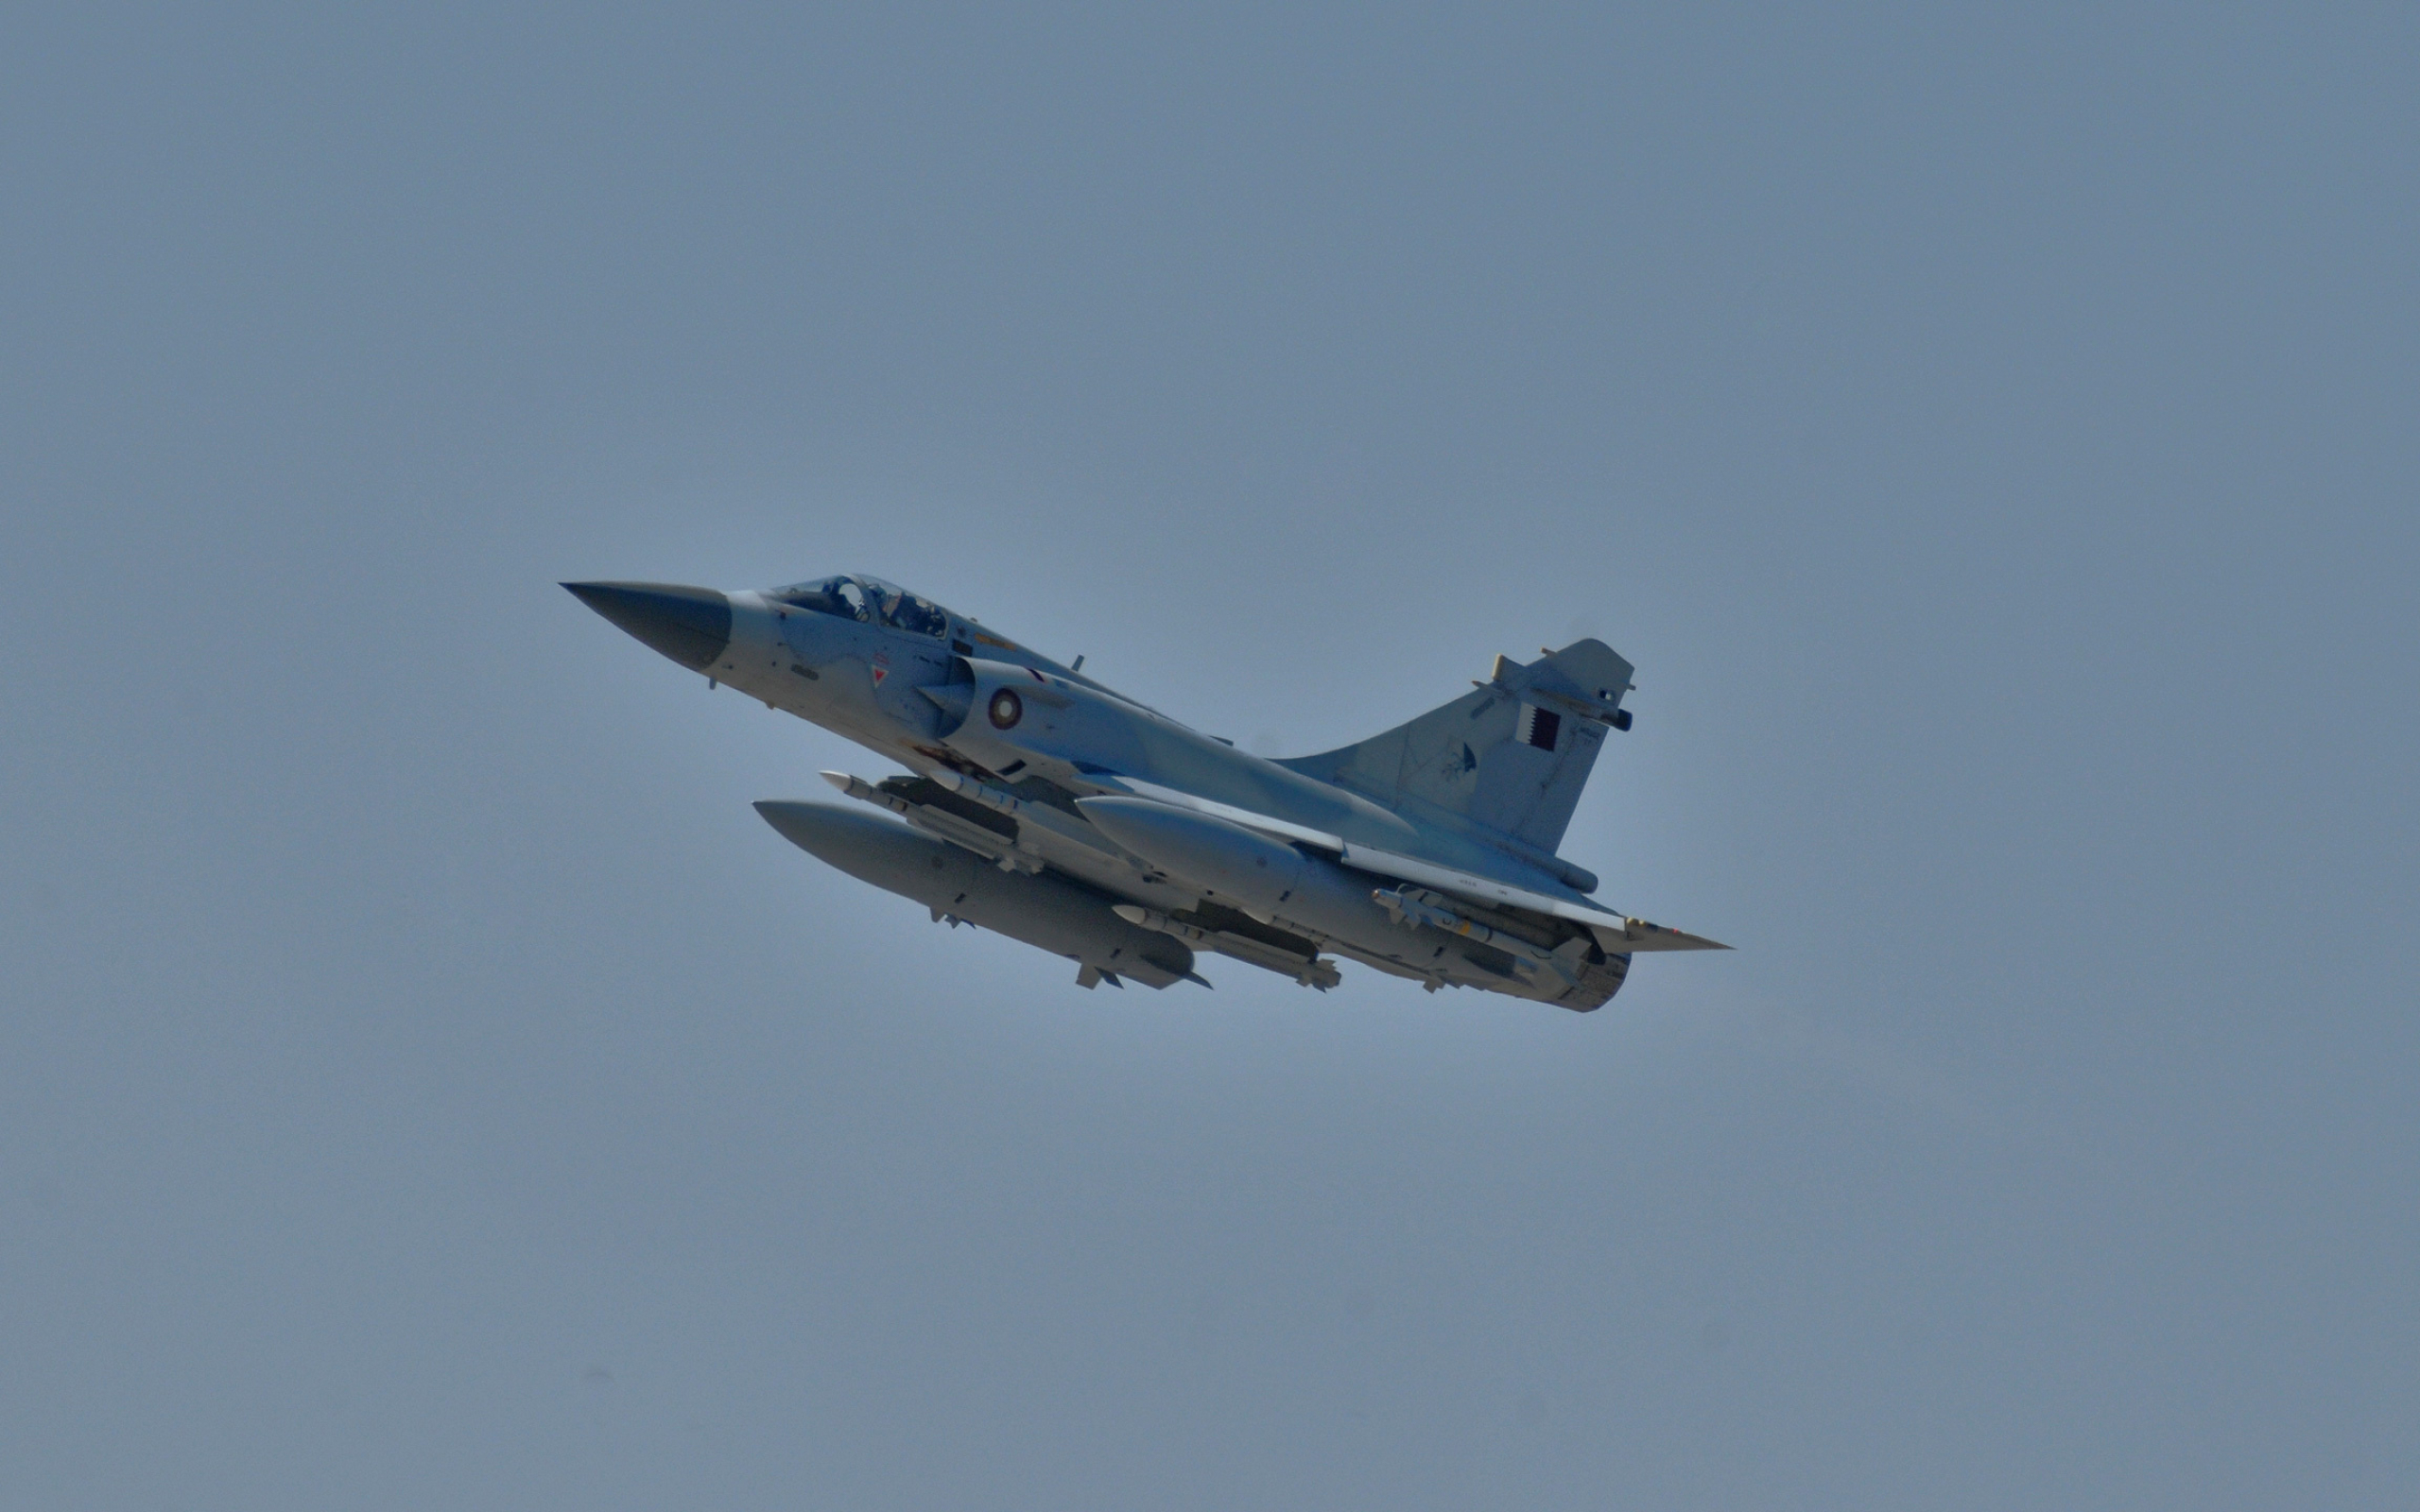 29+ Dassault Mirage 2000 Wallpapers 2560x1600